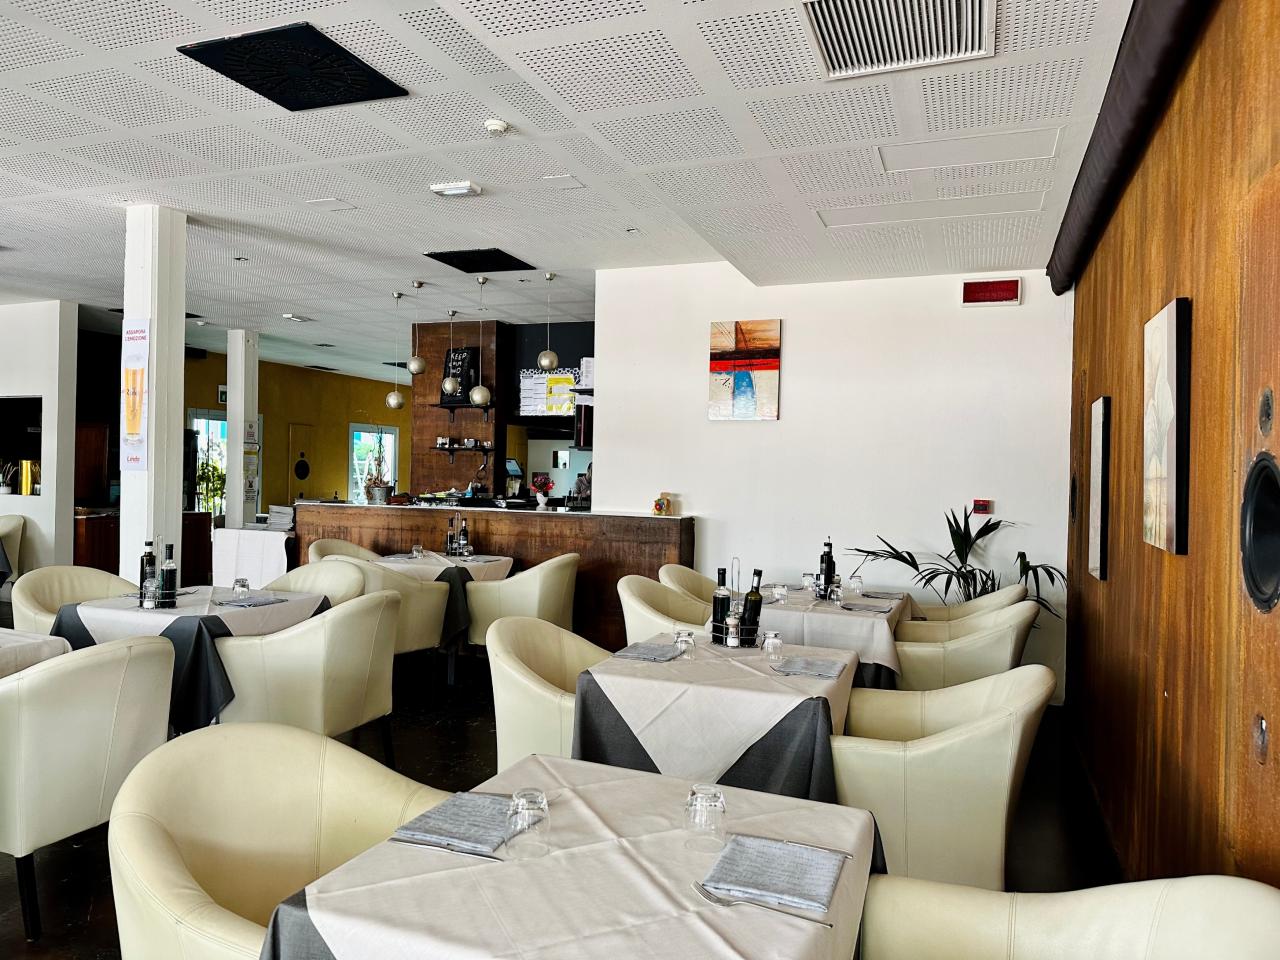 Restaurant Rojz Innenansicht: Raum mit weißen Tischen und weißen Sesseln